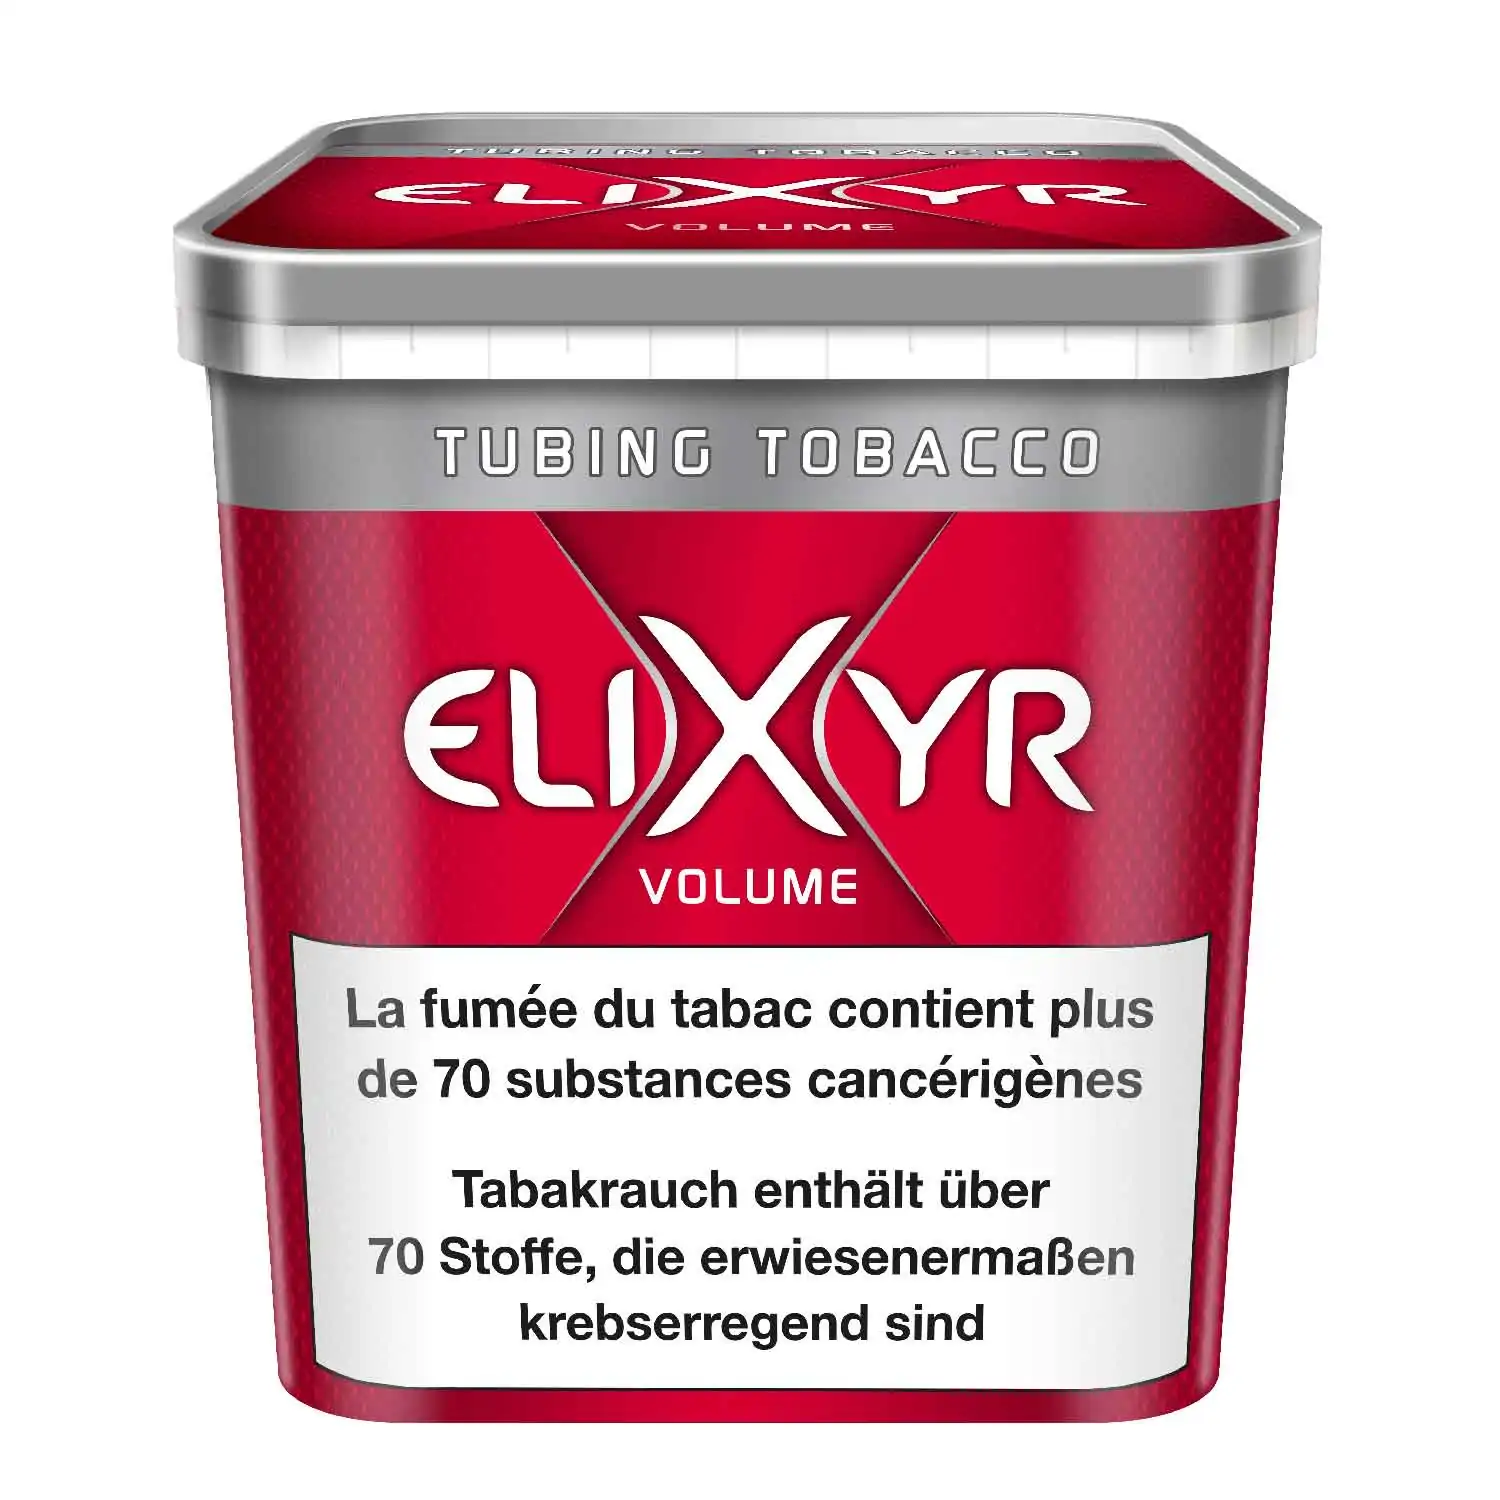 Elixyr volume maxx 250g - Buy at Real Tobacco